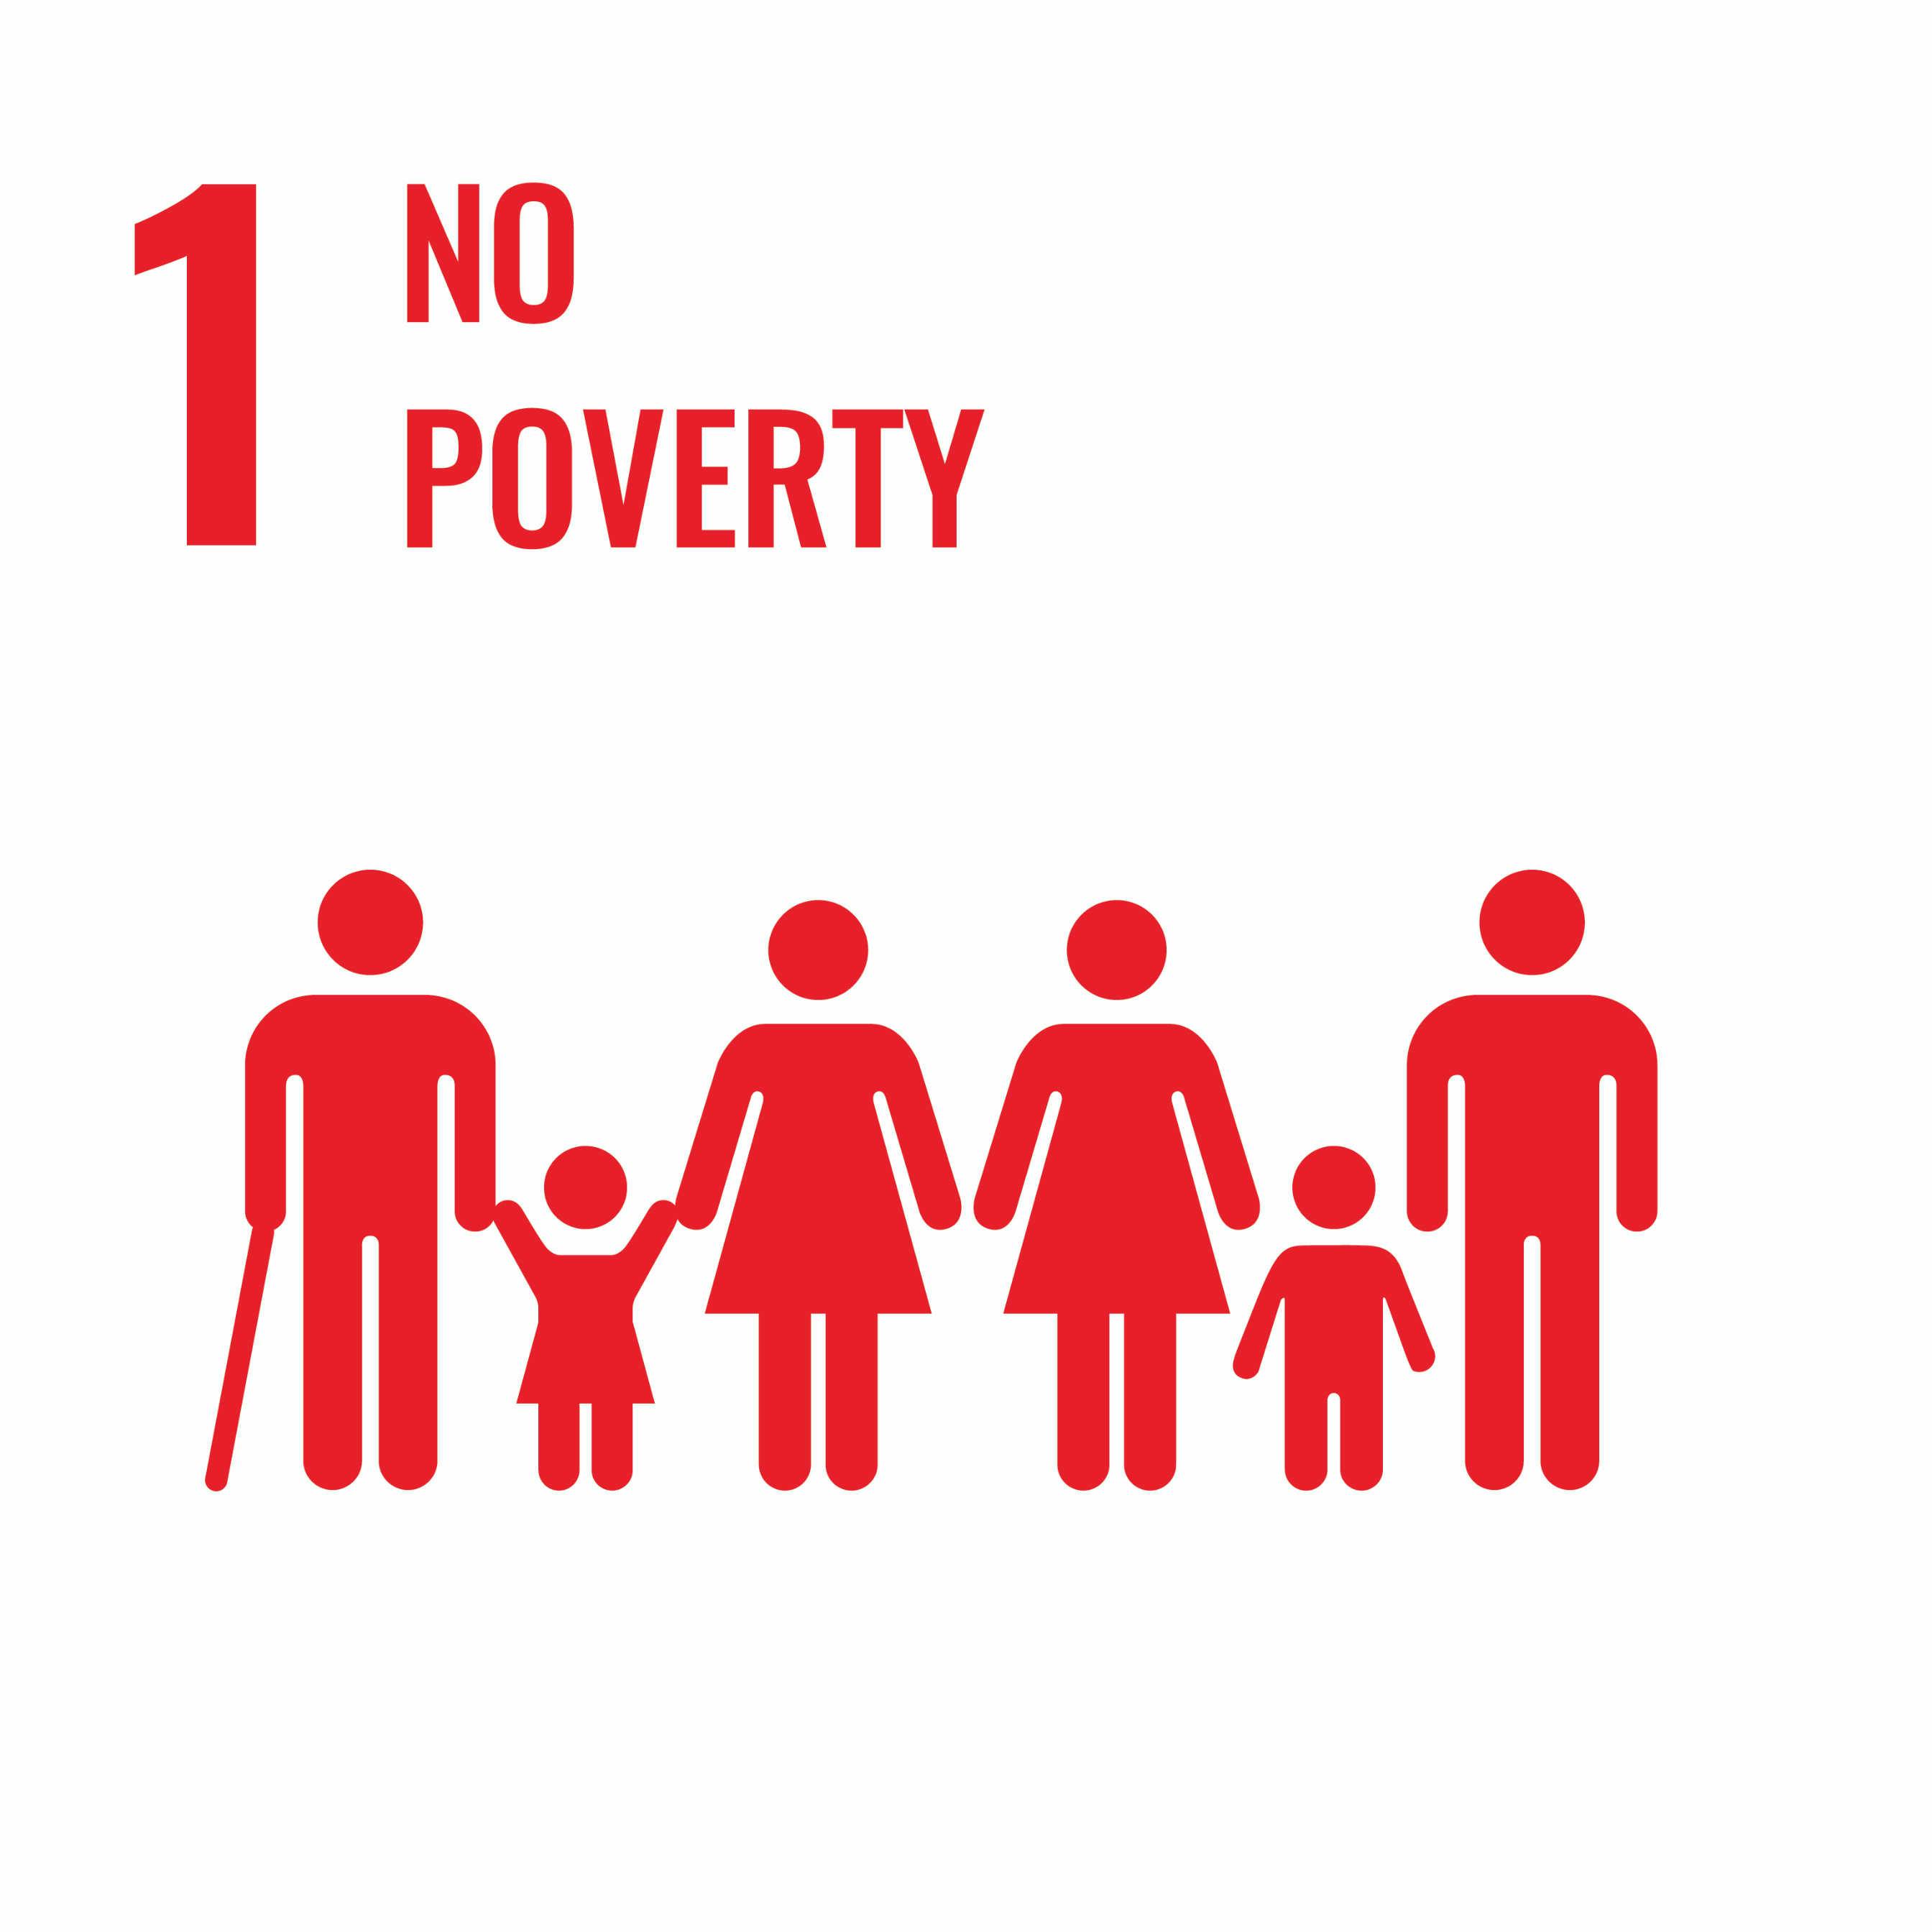 Ziel 1: Bekämpfung der Armut in all ihren Formen weltweit